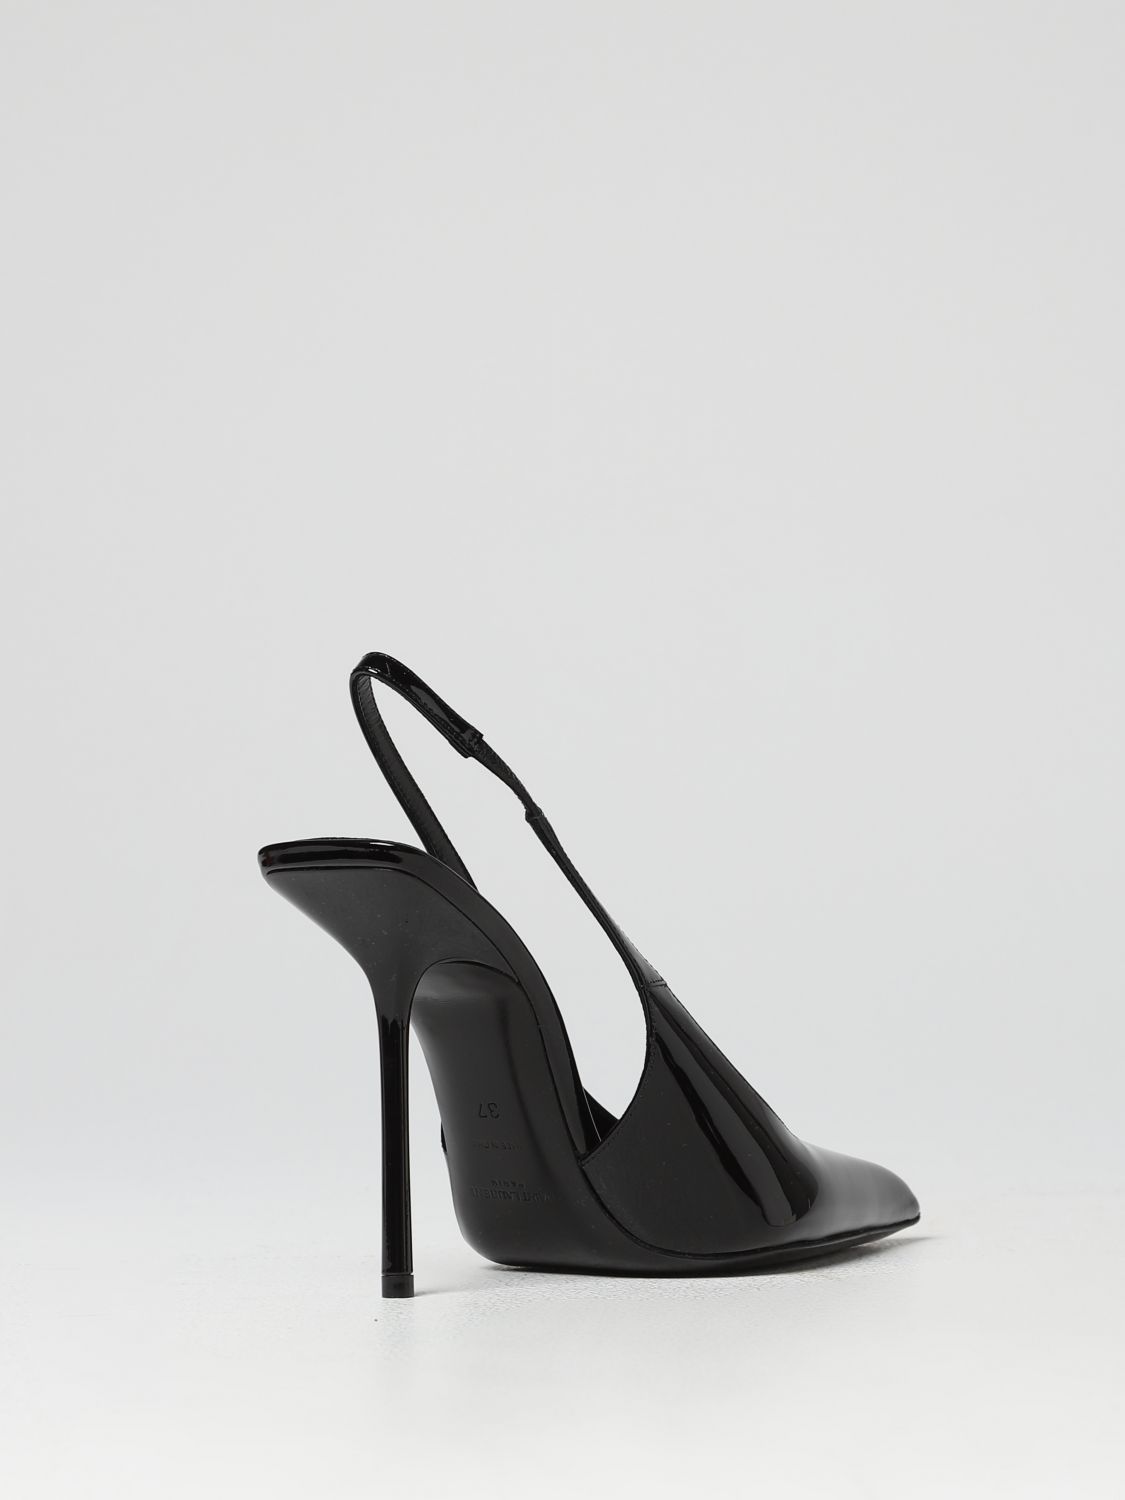 SAINT LAURENT: Shoes woman - Black | Saint Laurent high heel shoes ...